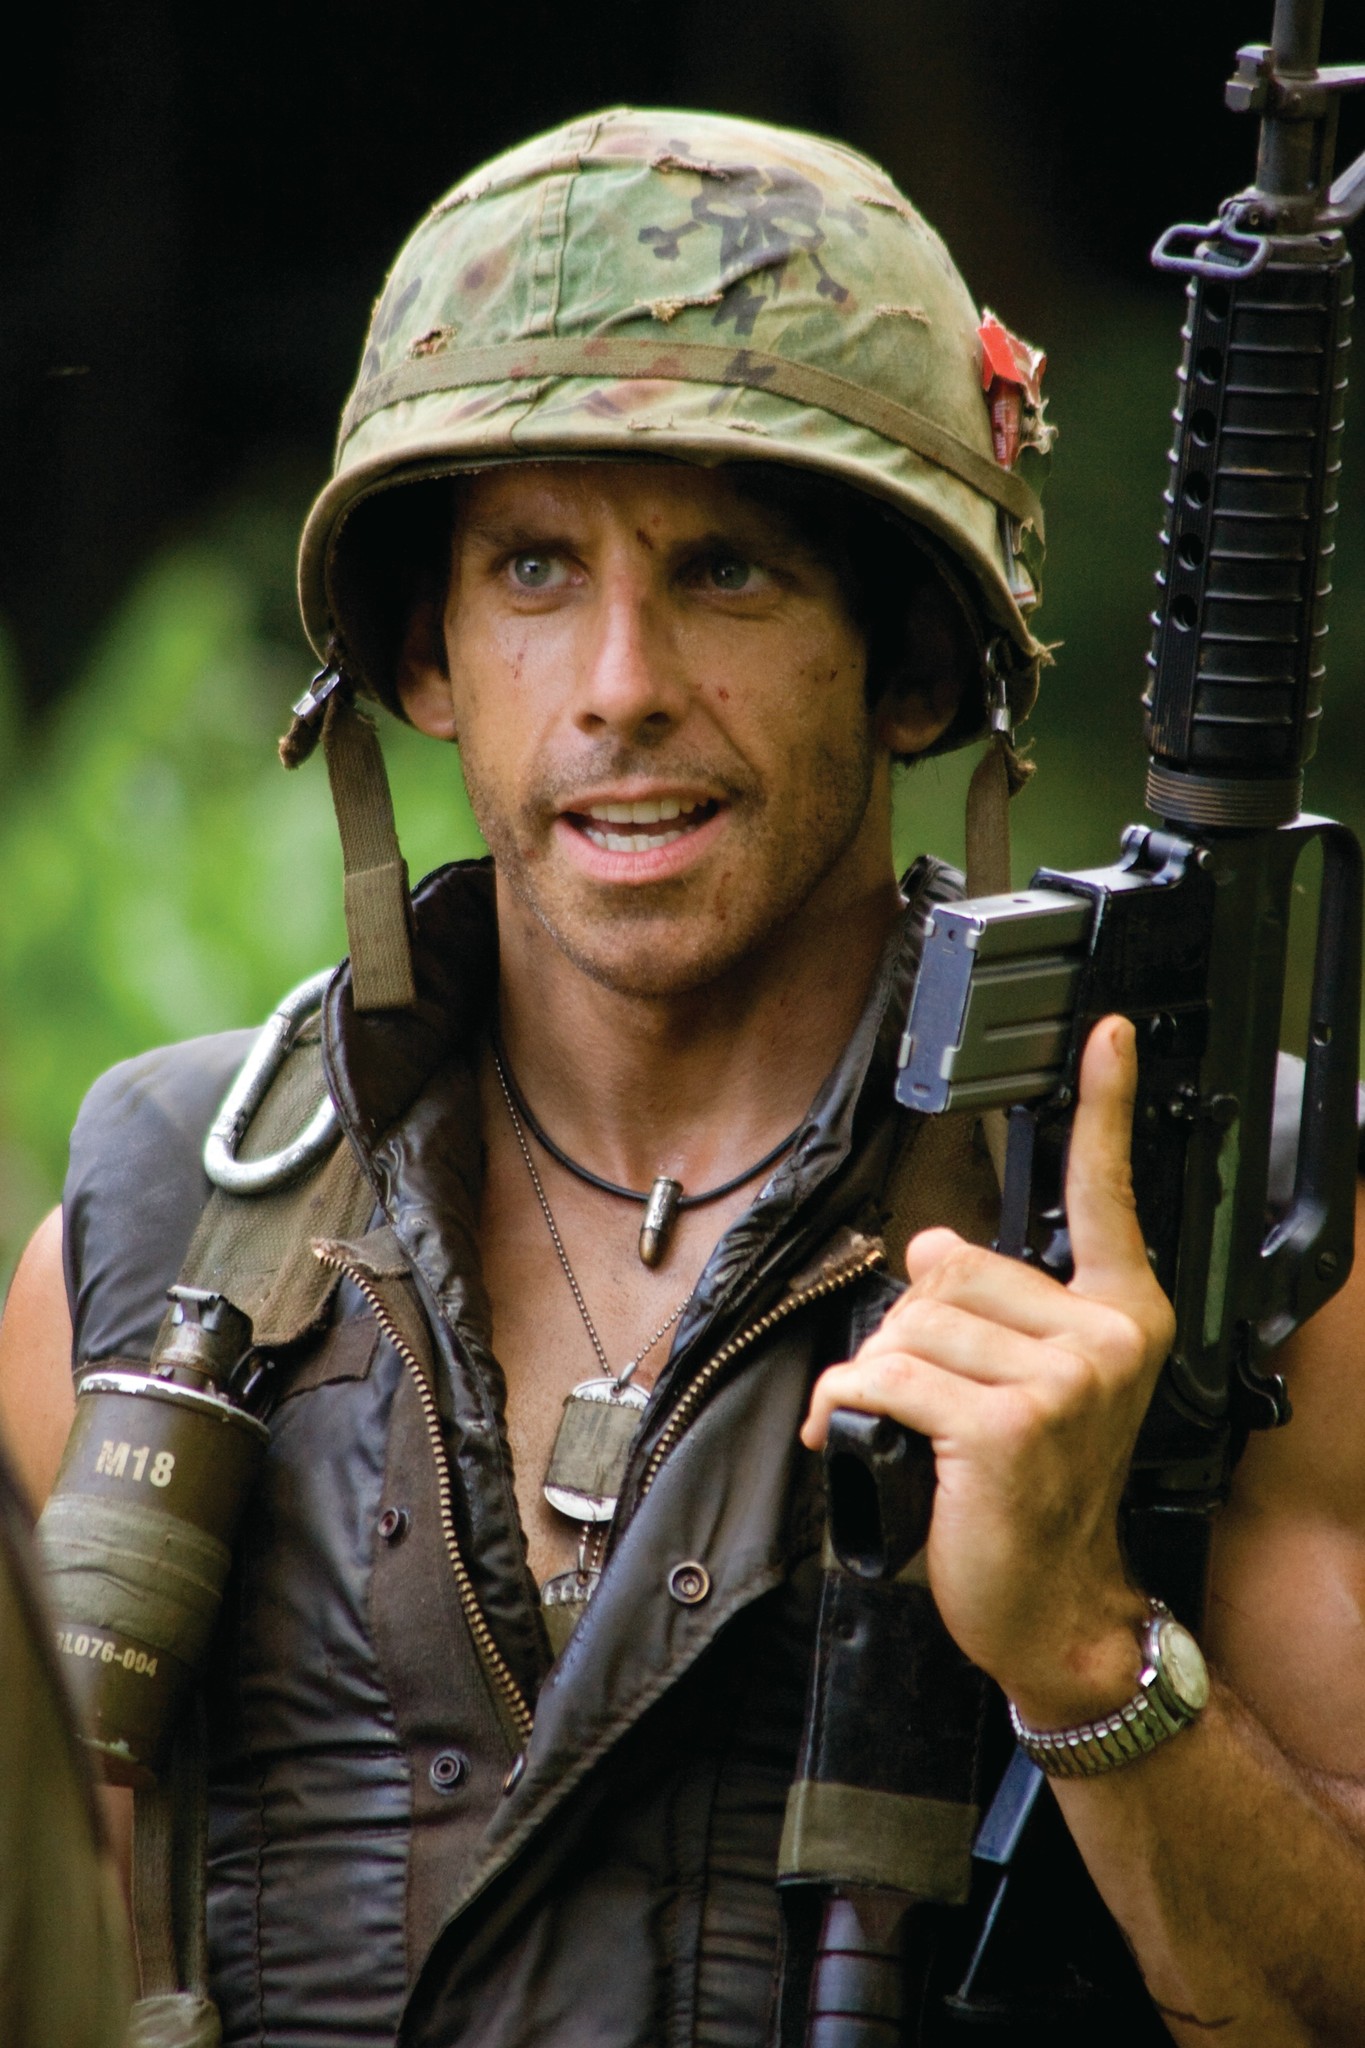 Ben Stiller in Tropic Thunder (2008)